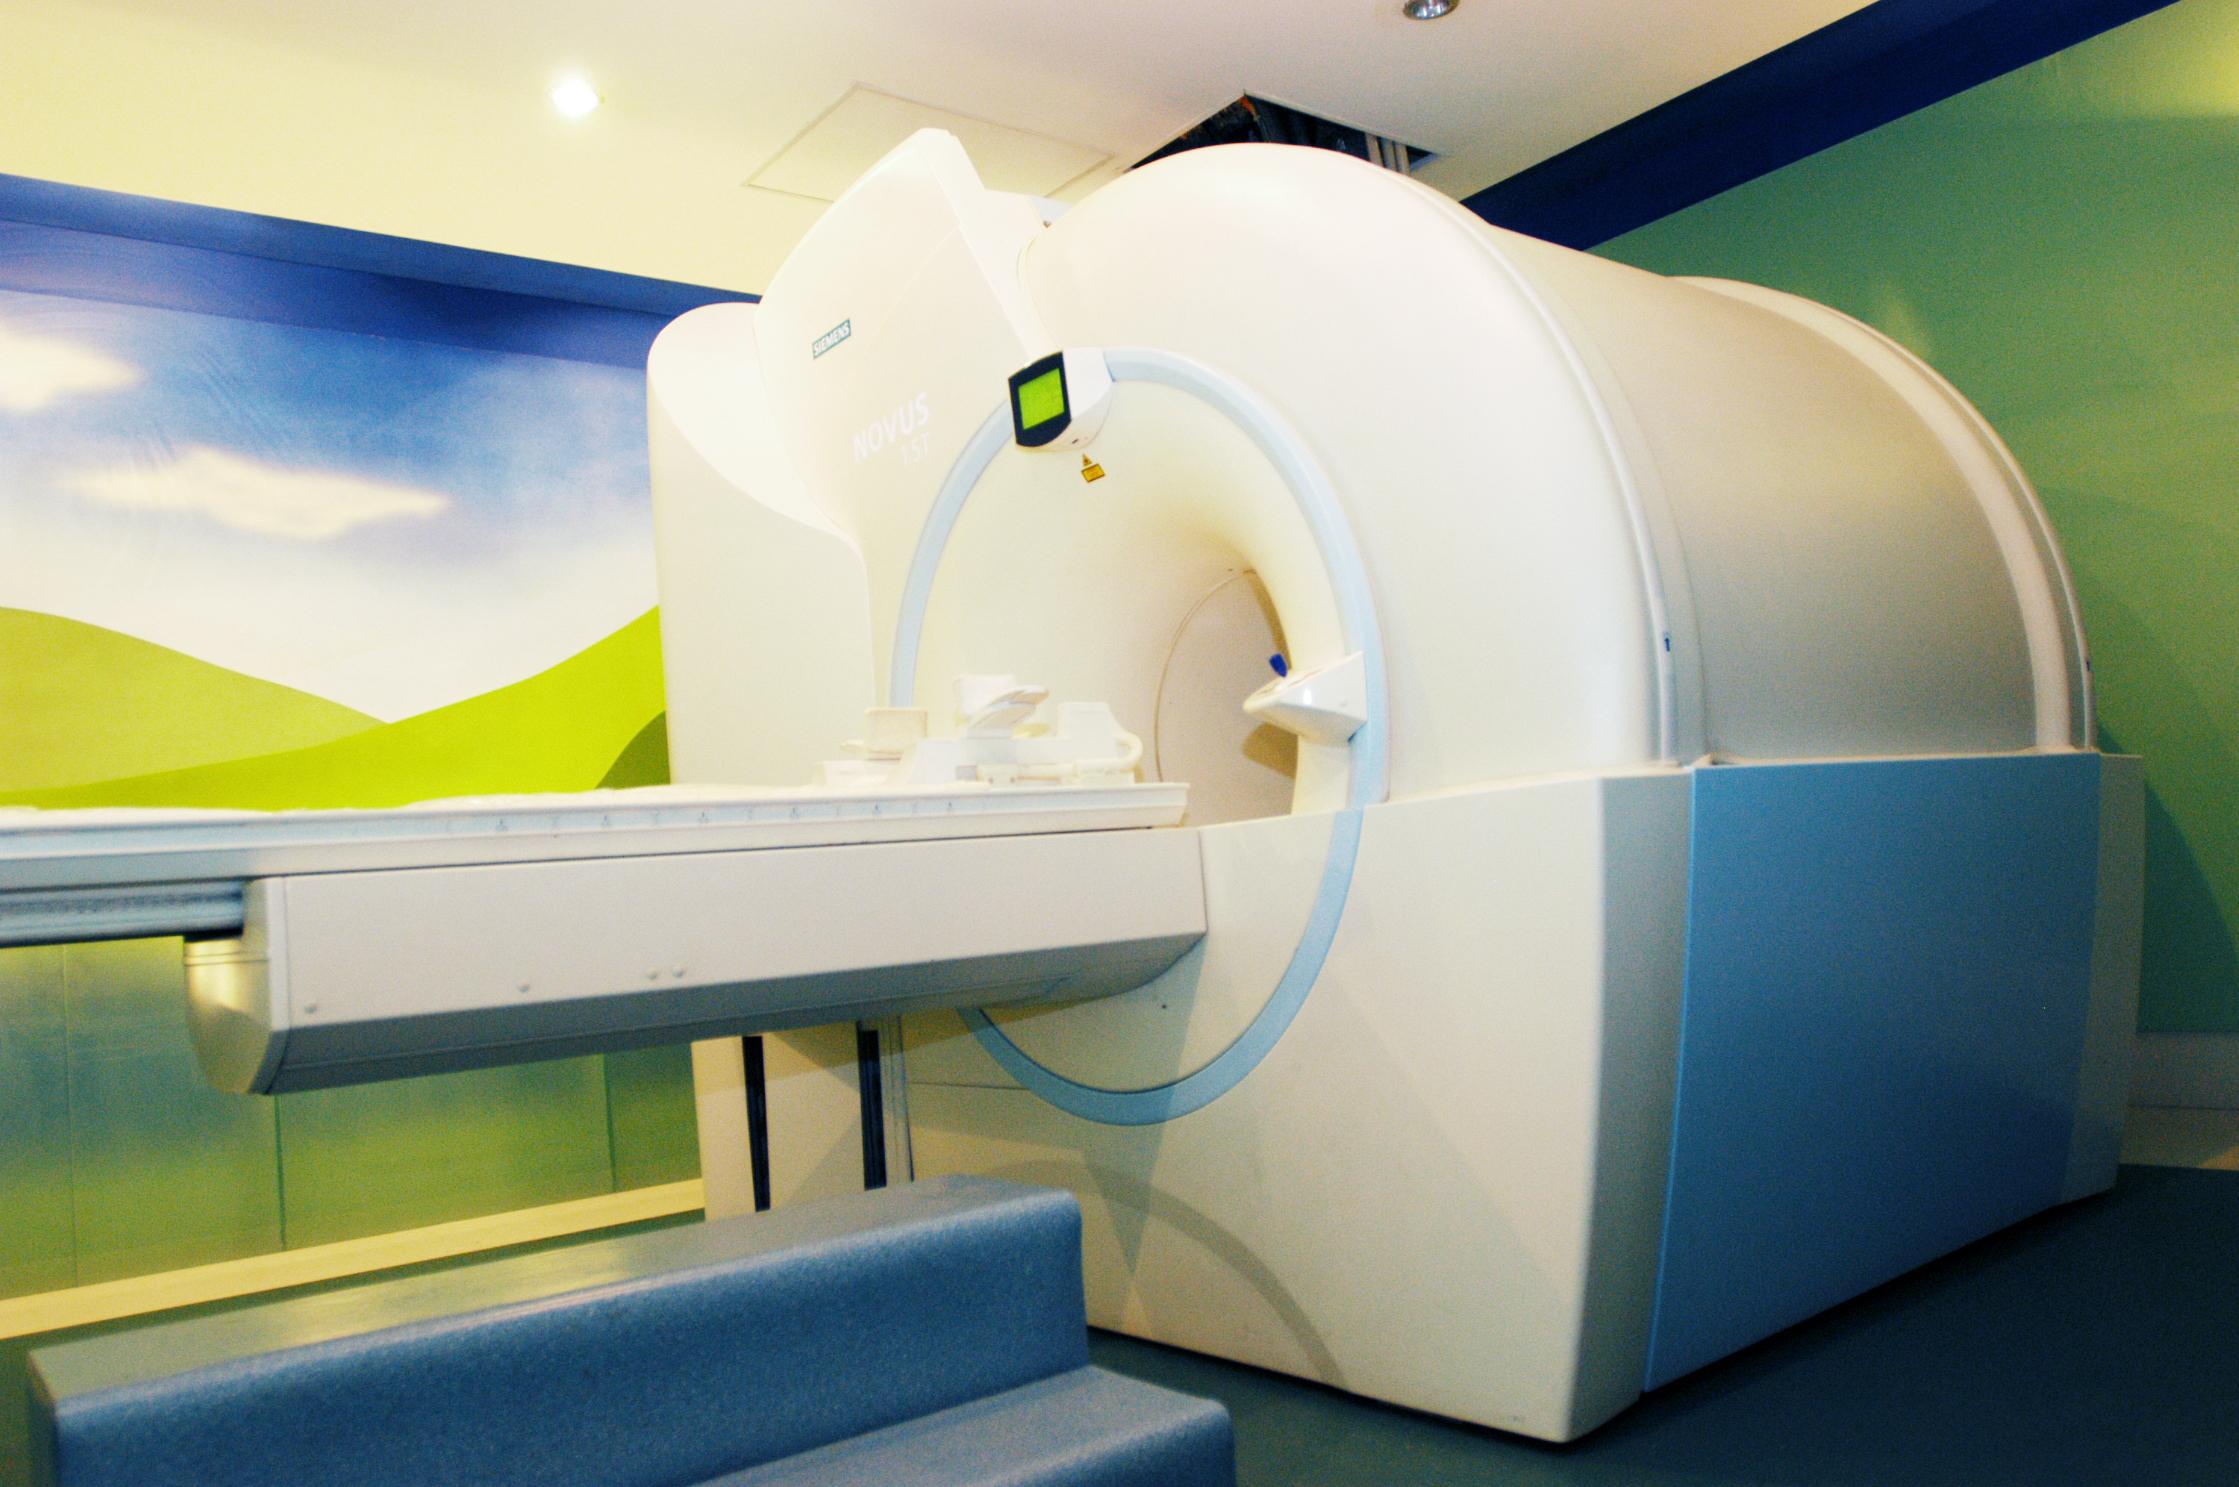 磁共振扫描仪;脑科学